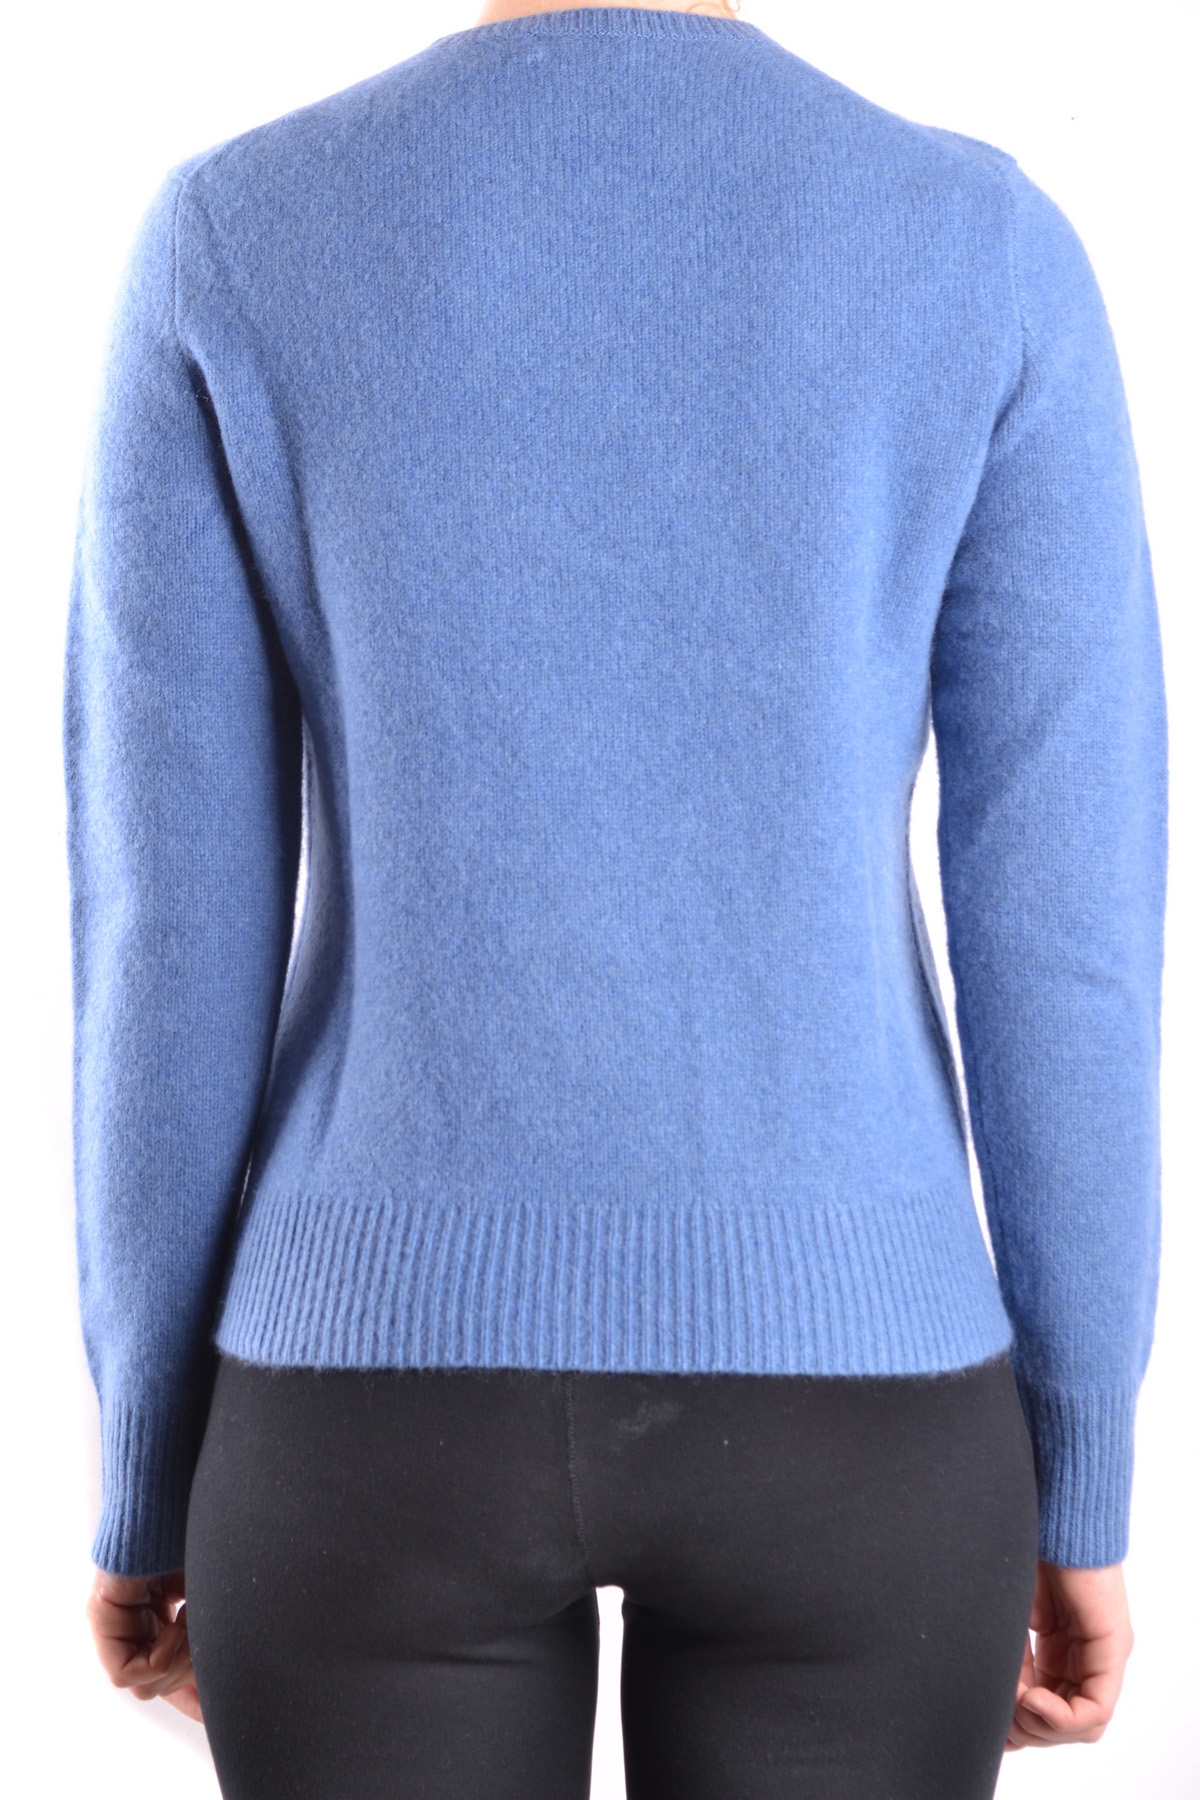 Ralph Lauren Sweaters | eBay